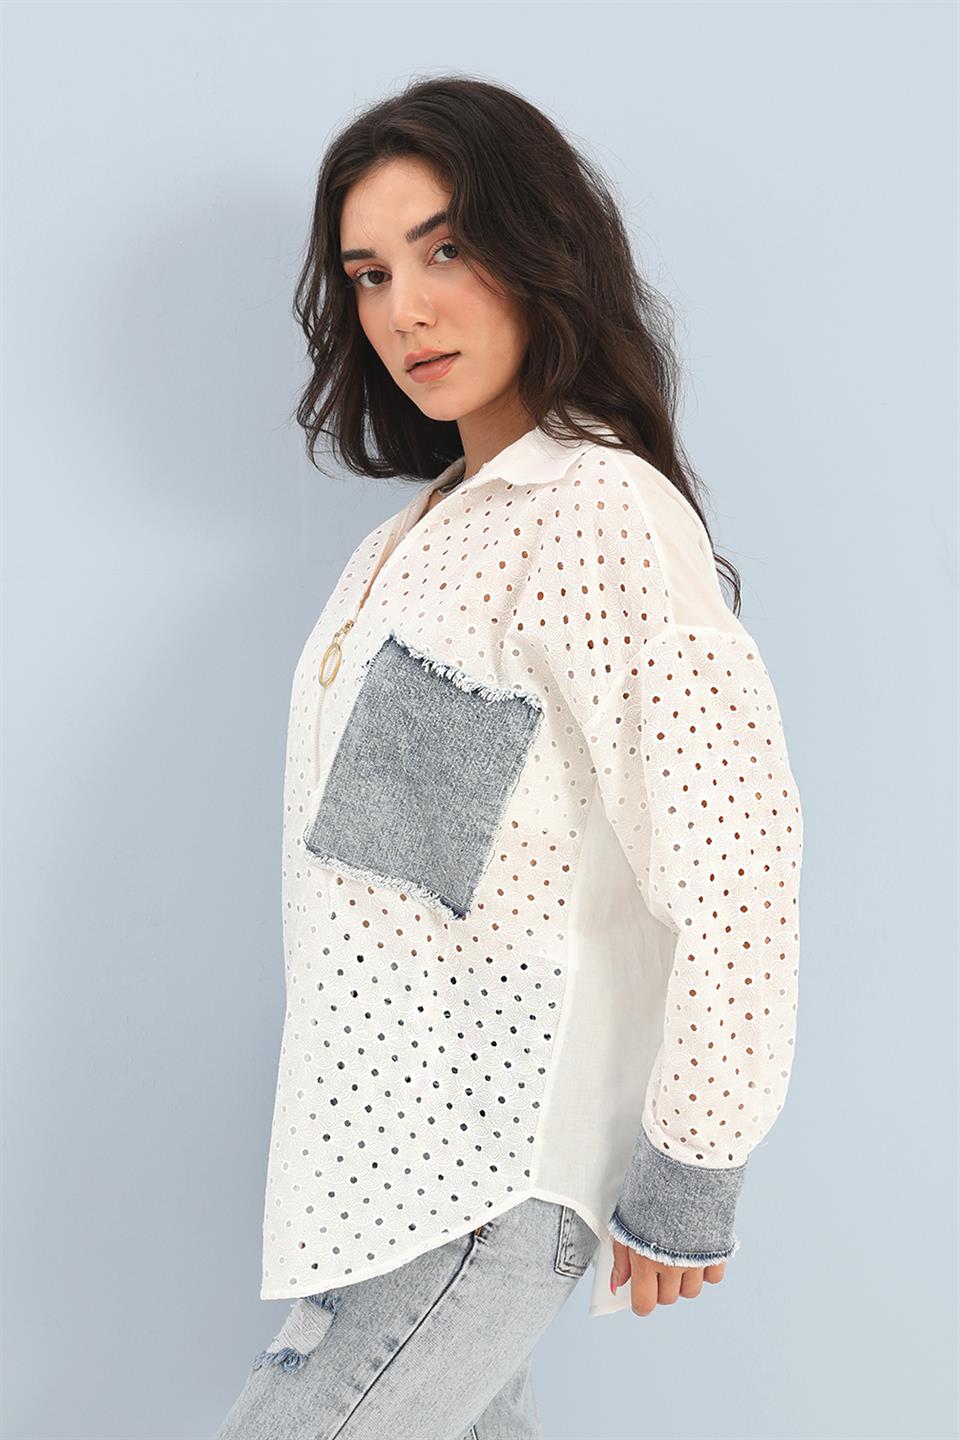 Women's Shirt Embroidered Denim Garnish Floral Pattern - White - STREET MODE ™